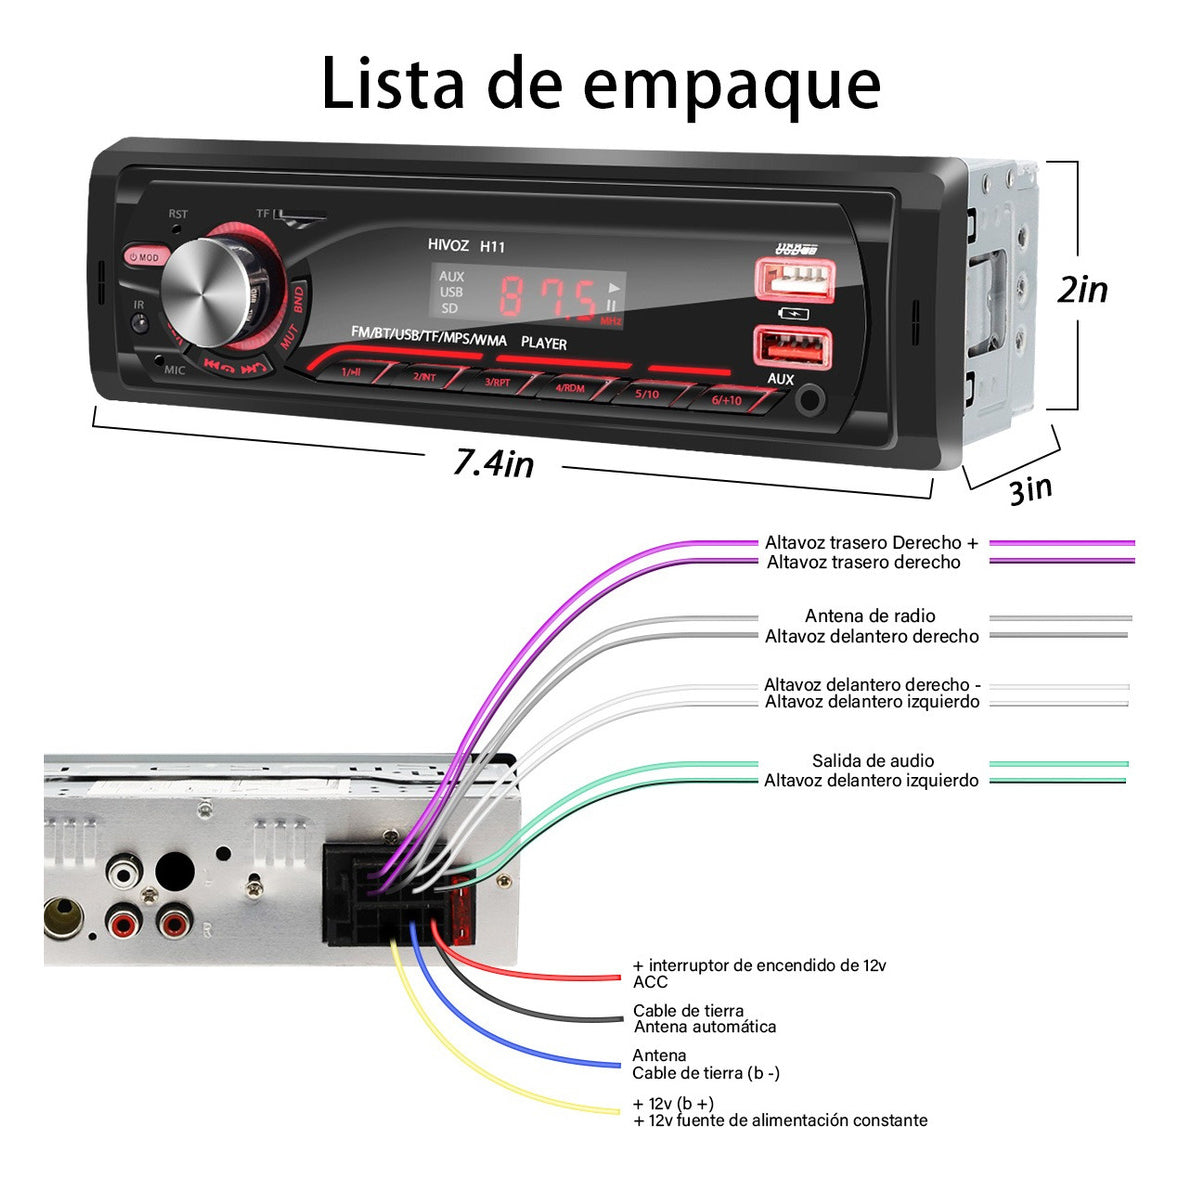 Auto Estereo Coche Reproductor Mp3 Radio Con Bt Aux 2usb Sd